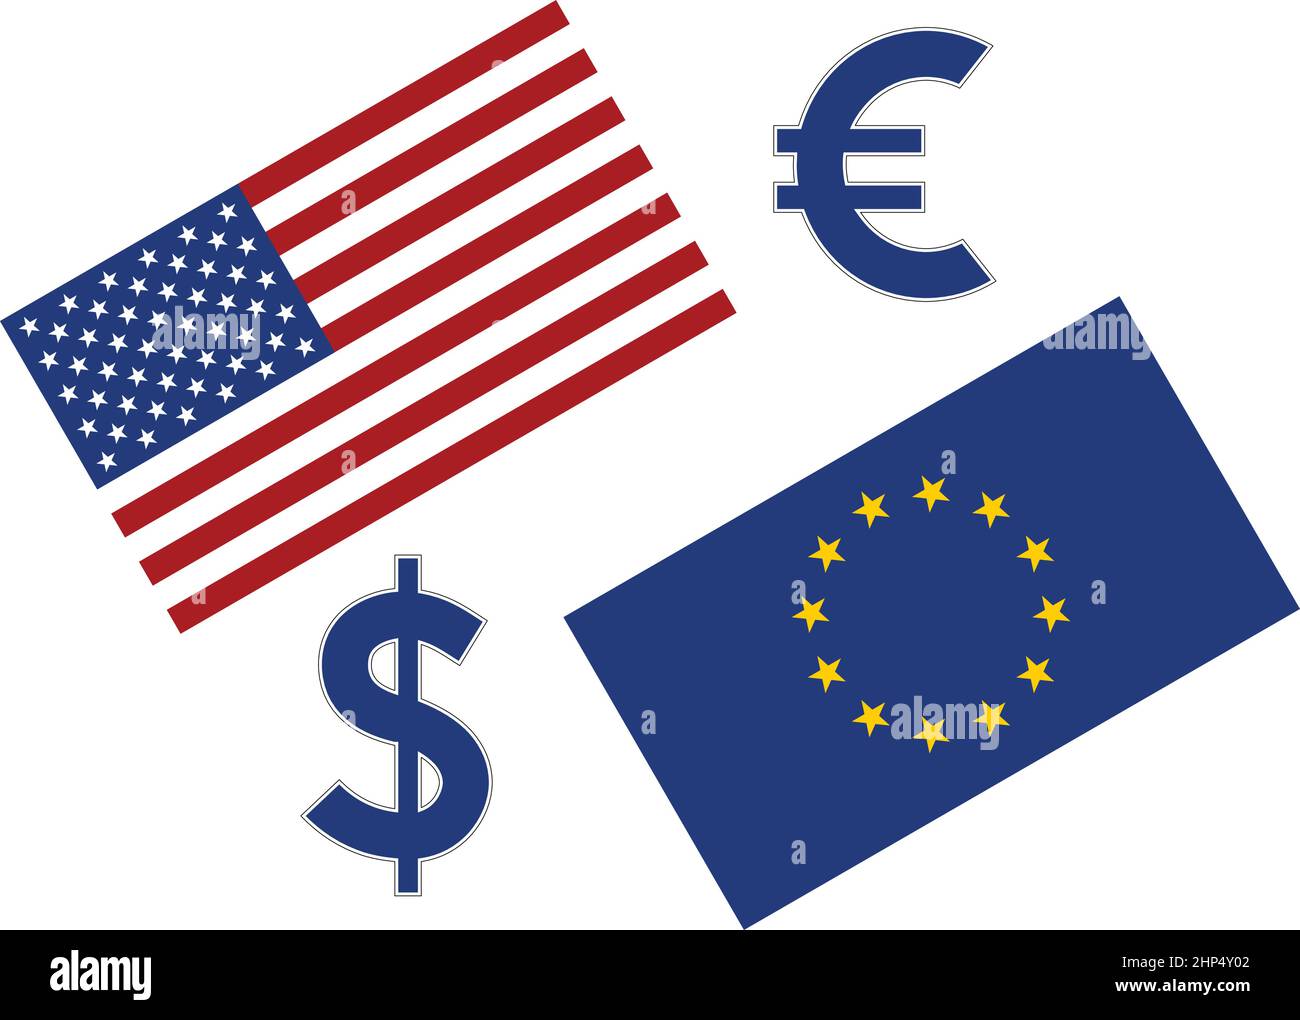 Paire de devises Forex EURUSD illustration. Ue et drapeau américain, avec l'euro et dollar symbole. Illustration de Vecteur